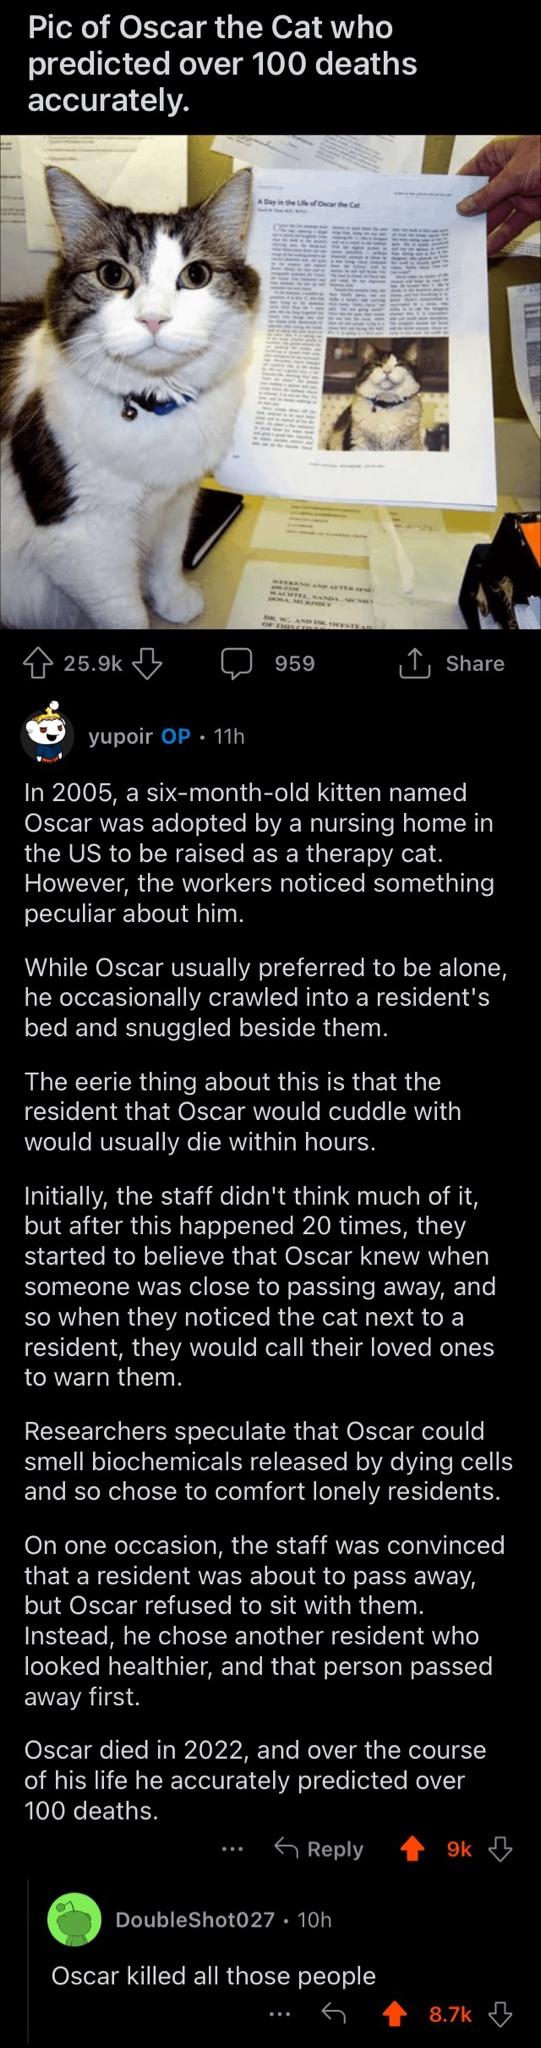 Oscar the cat